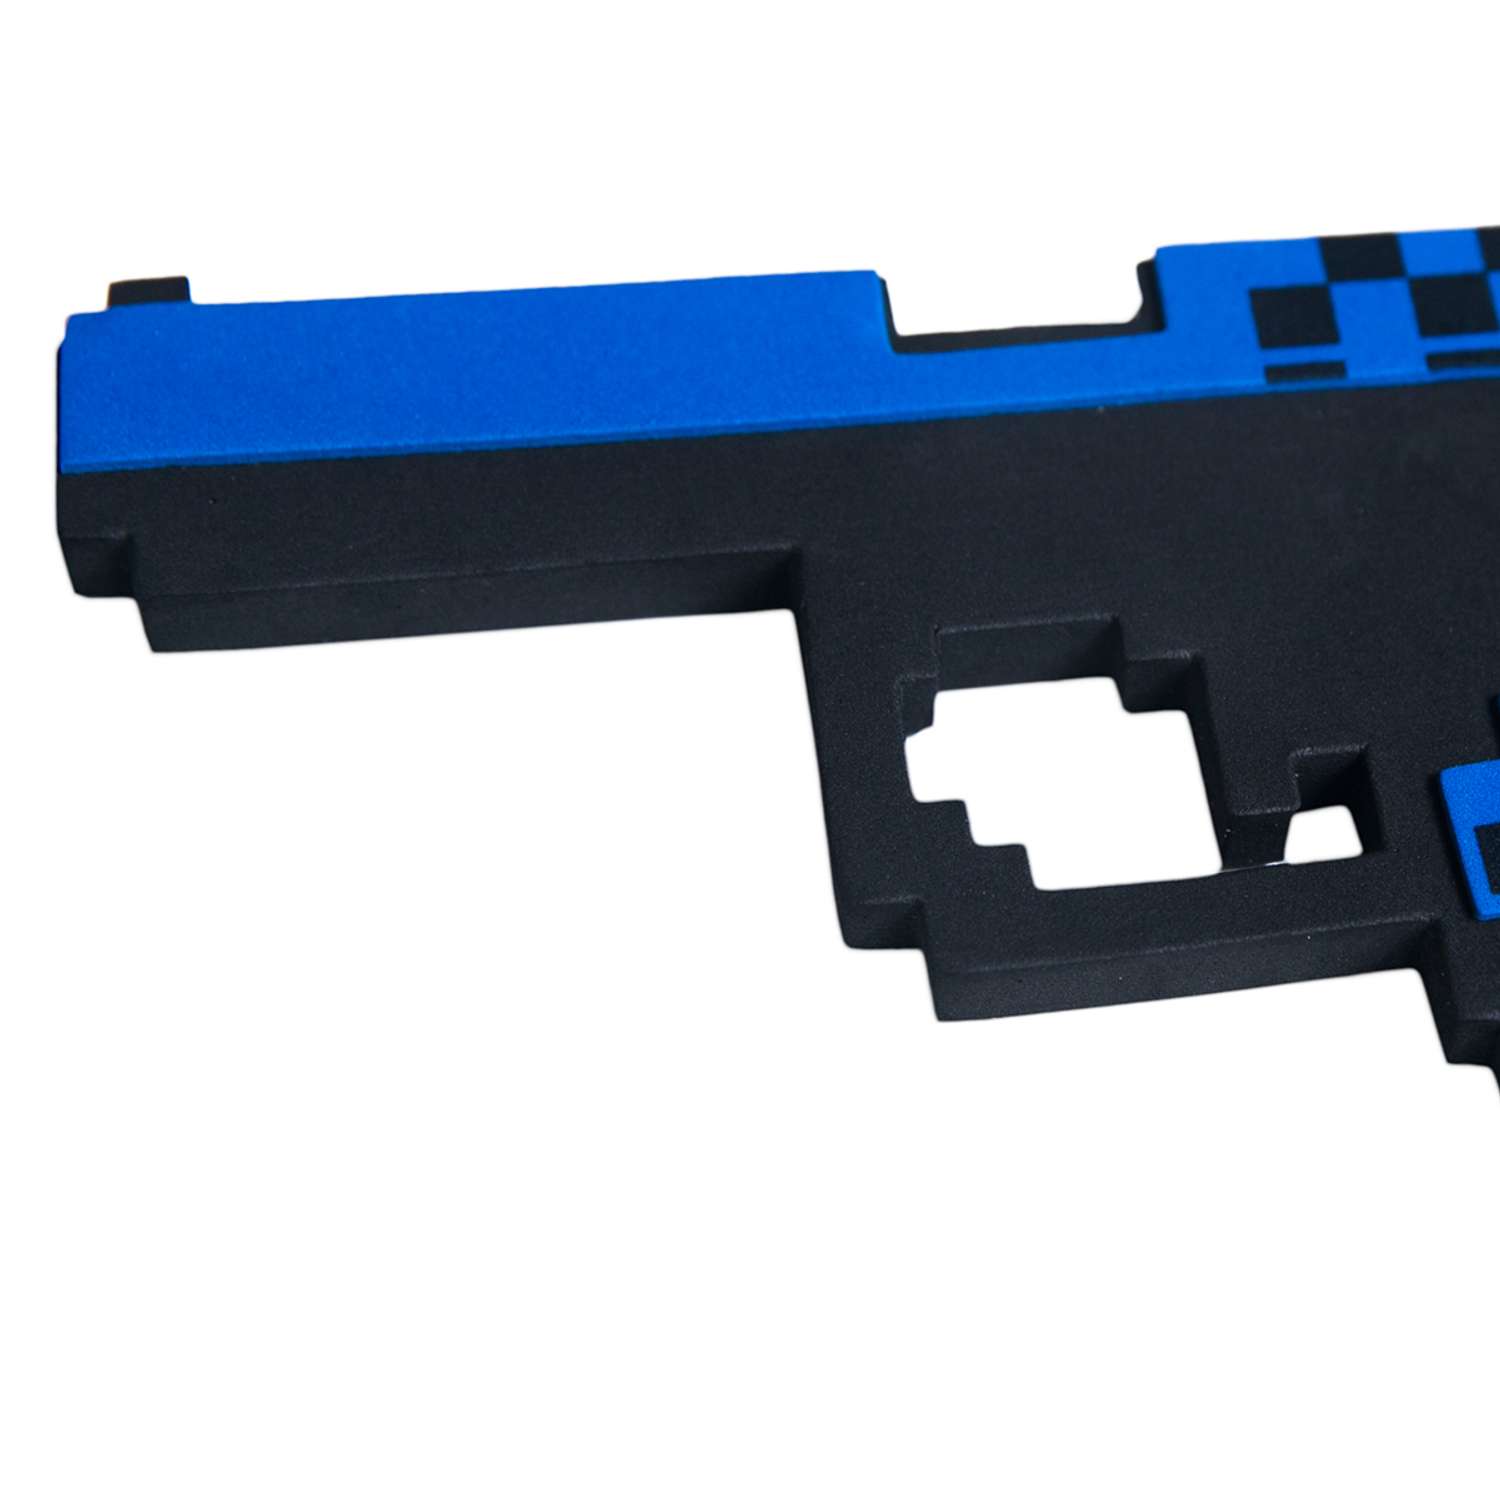 Пистолет Глок 17 8Бит Pixel Crew игрушечное оружие - фото 2